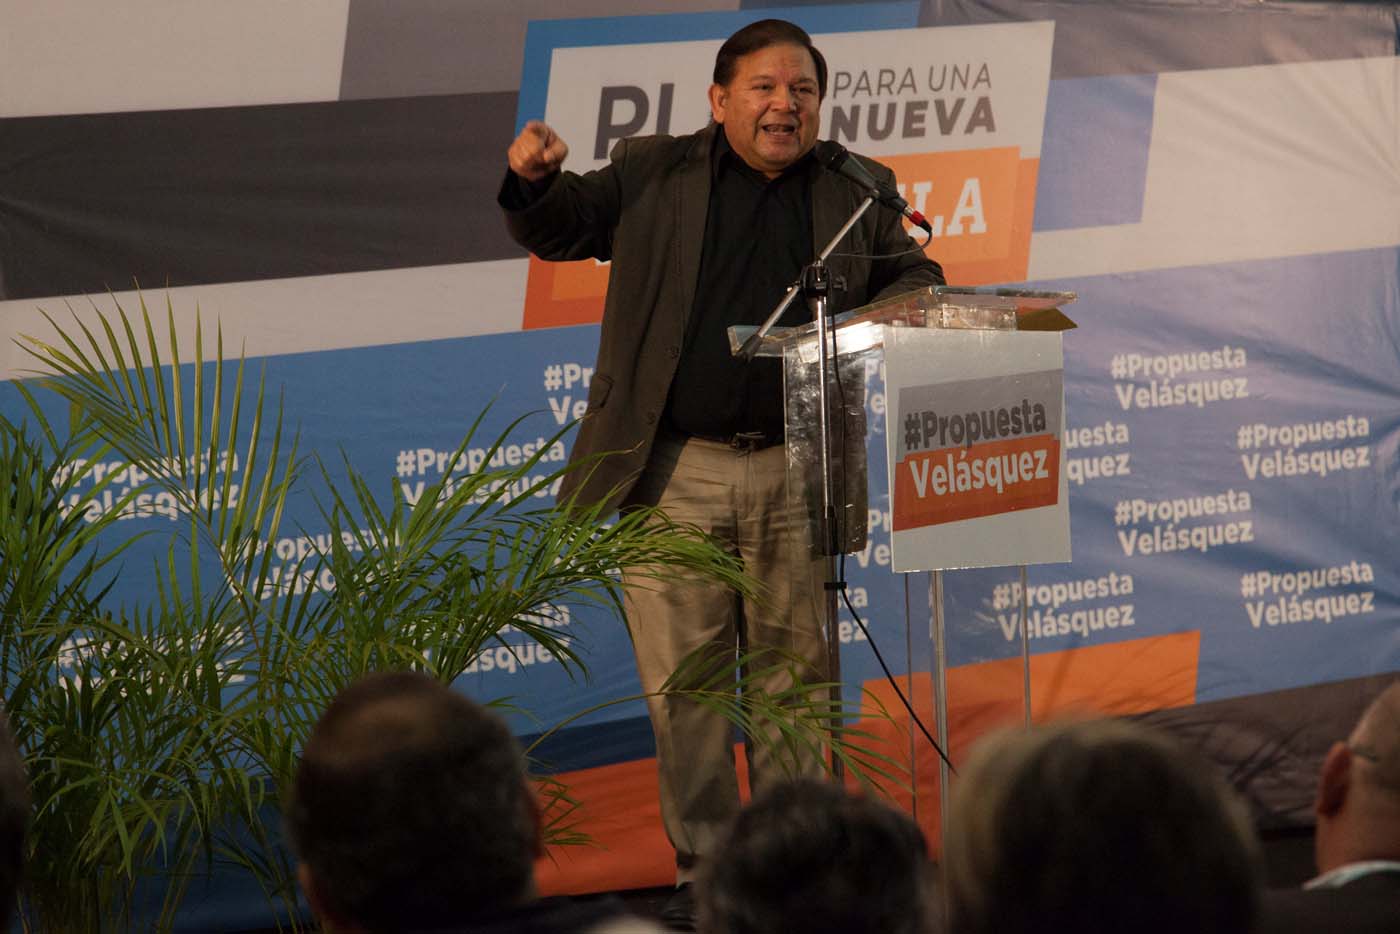 Andrés Velásquez propone una “gran alianza” para defender el voto libre